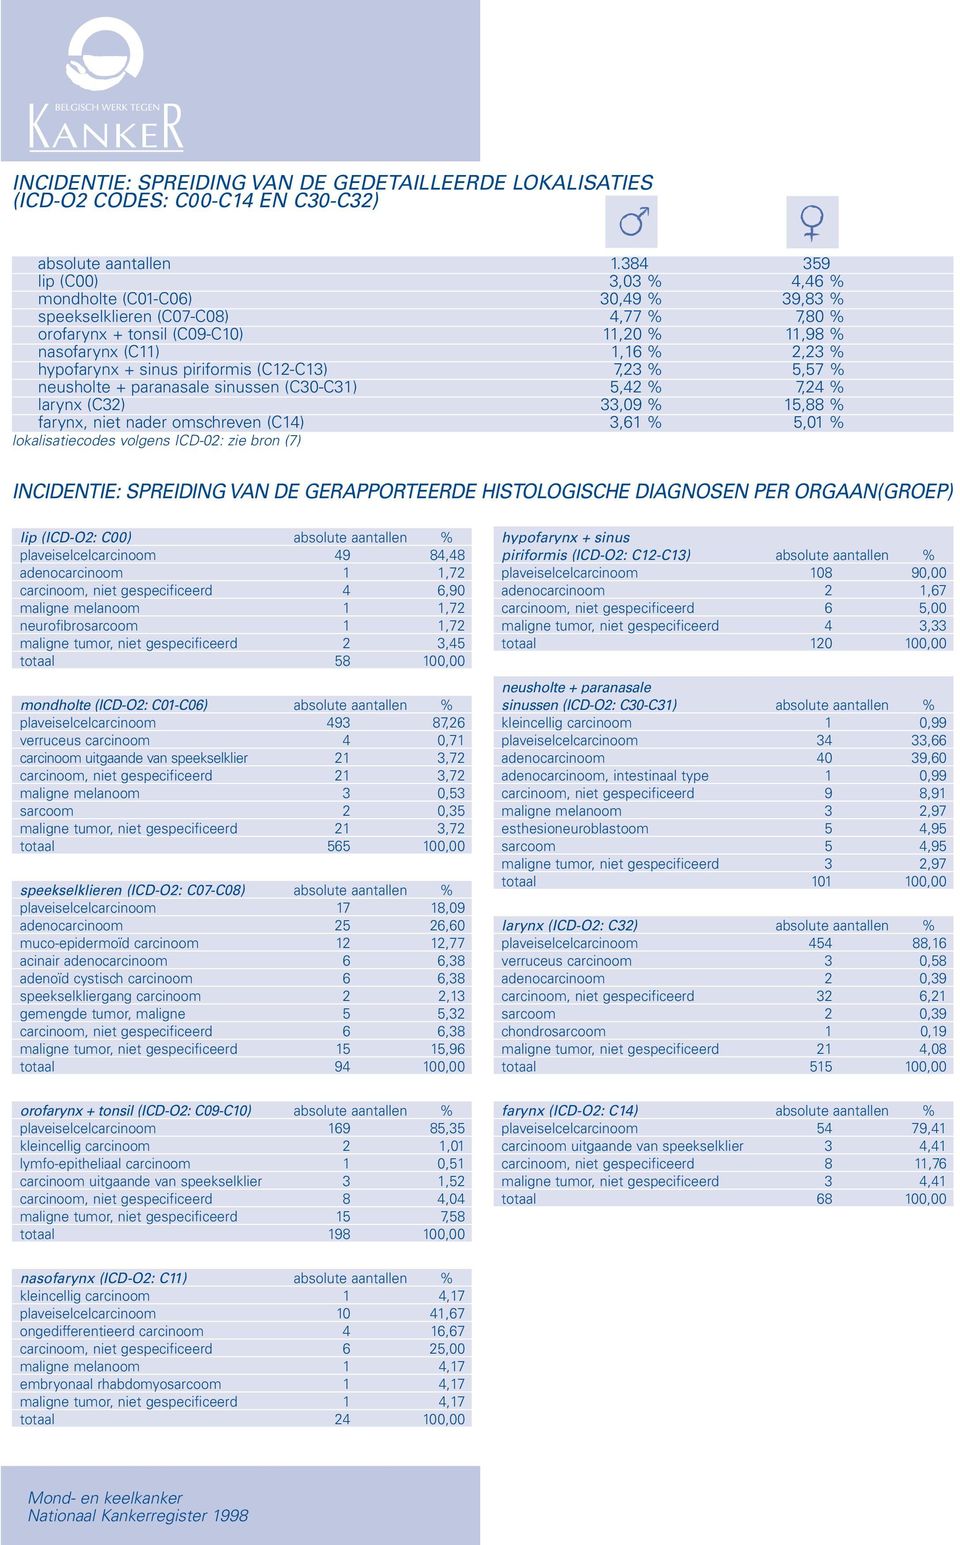 sinus piriformis (C12-C13) 7,23 % 5,57 % neusholte + paranasale sinussen (C30-C31) 5,42 % 7,24 % larynx (C32) 33,09 % 15,88 % farynx, niet nader omschreven (C14) 3,61 % 5,01 % lokalisatiecodes